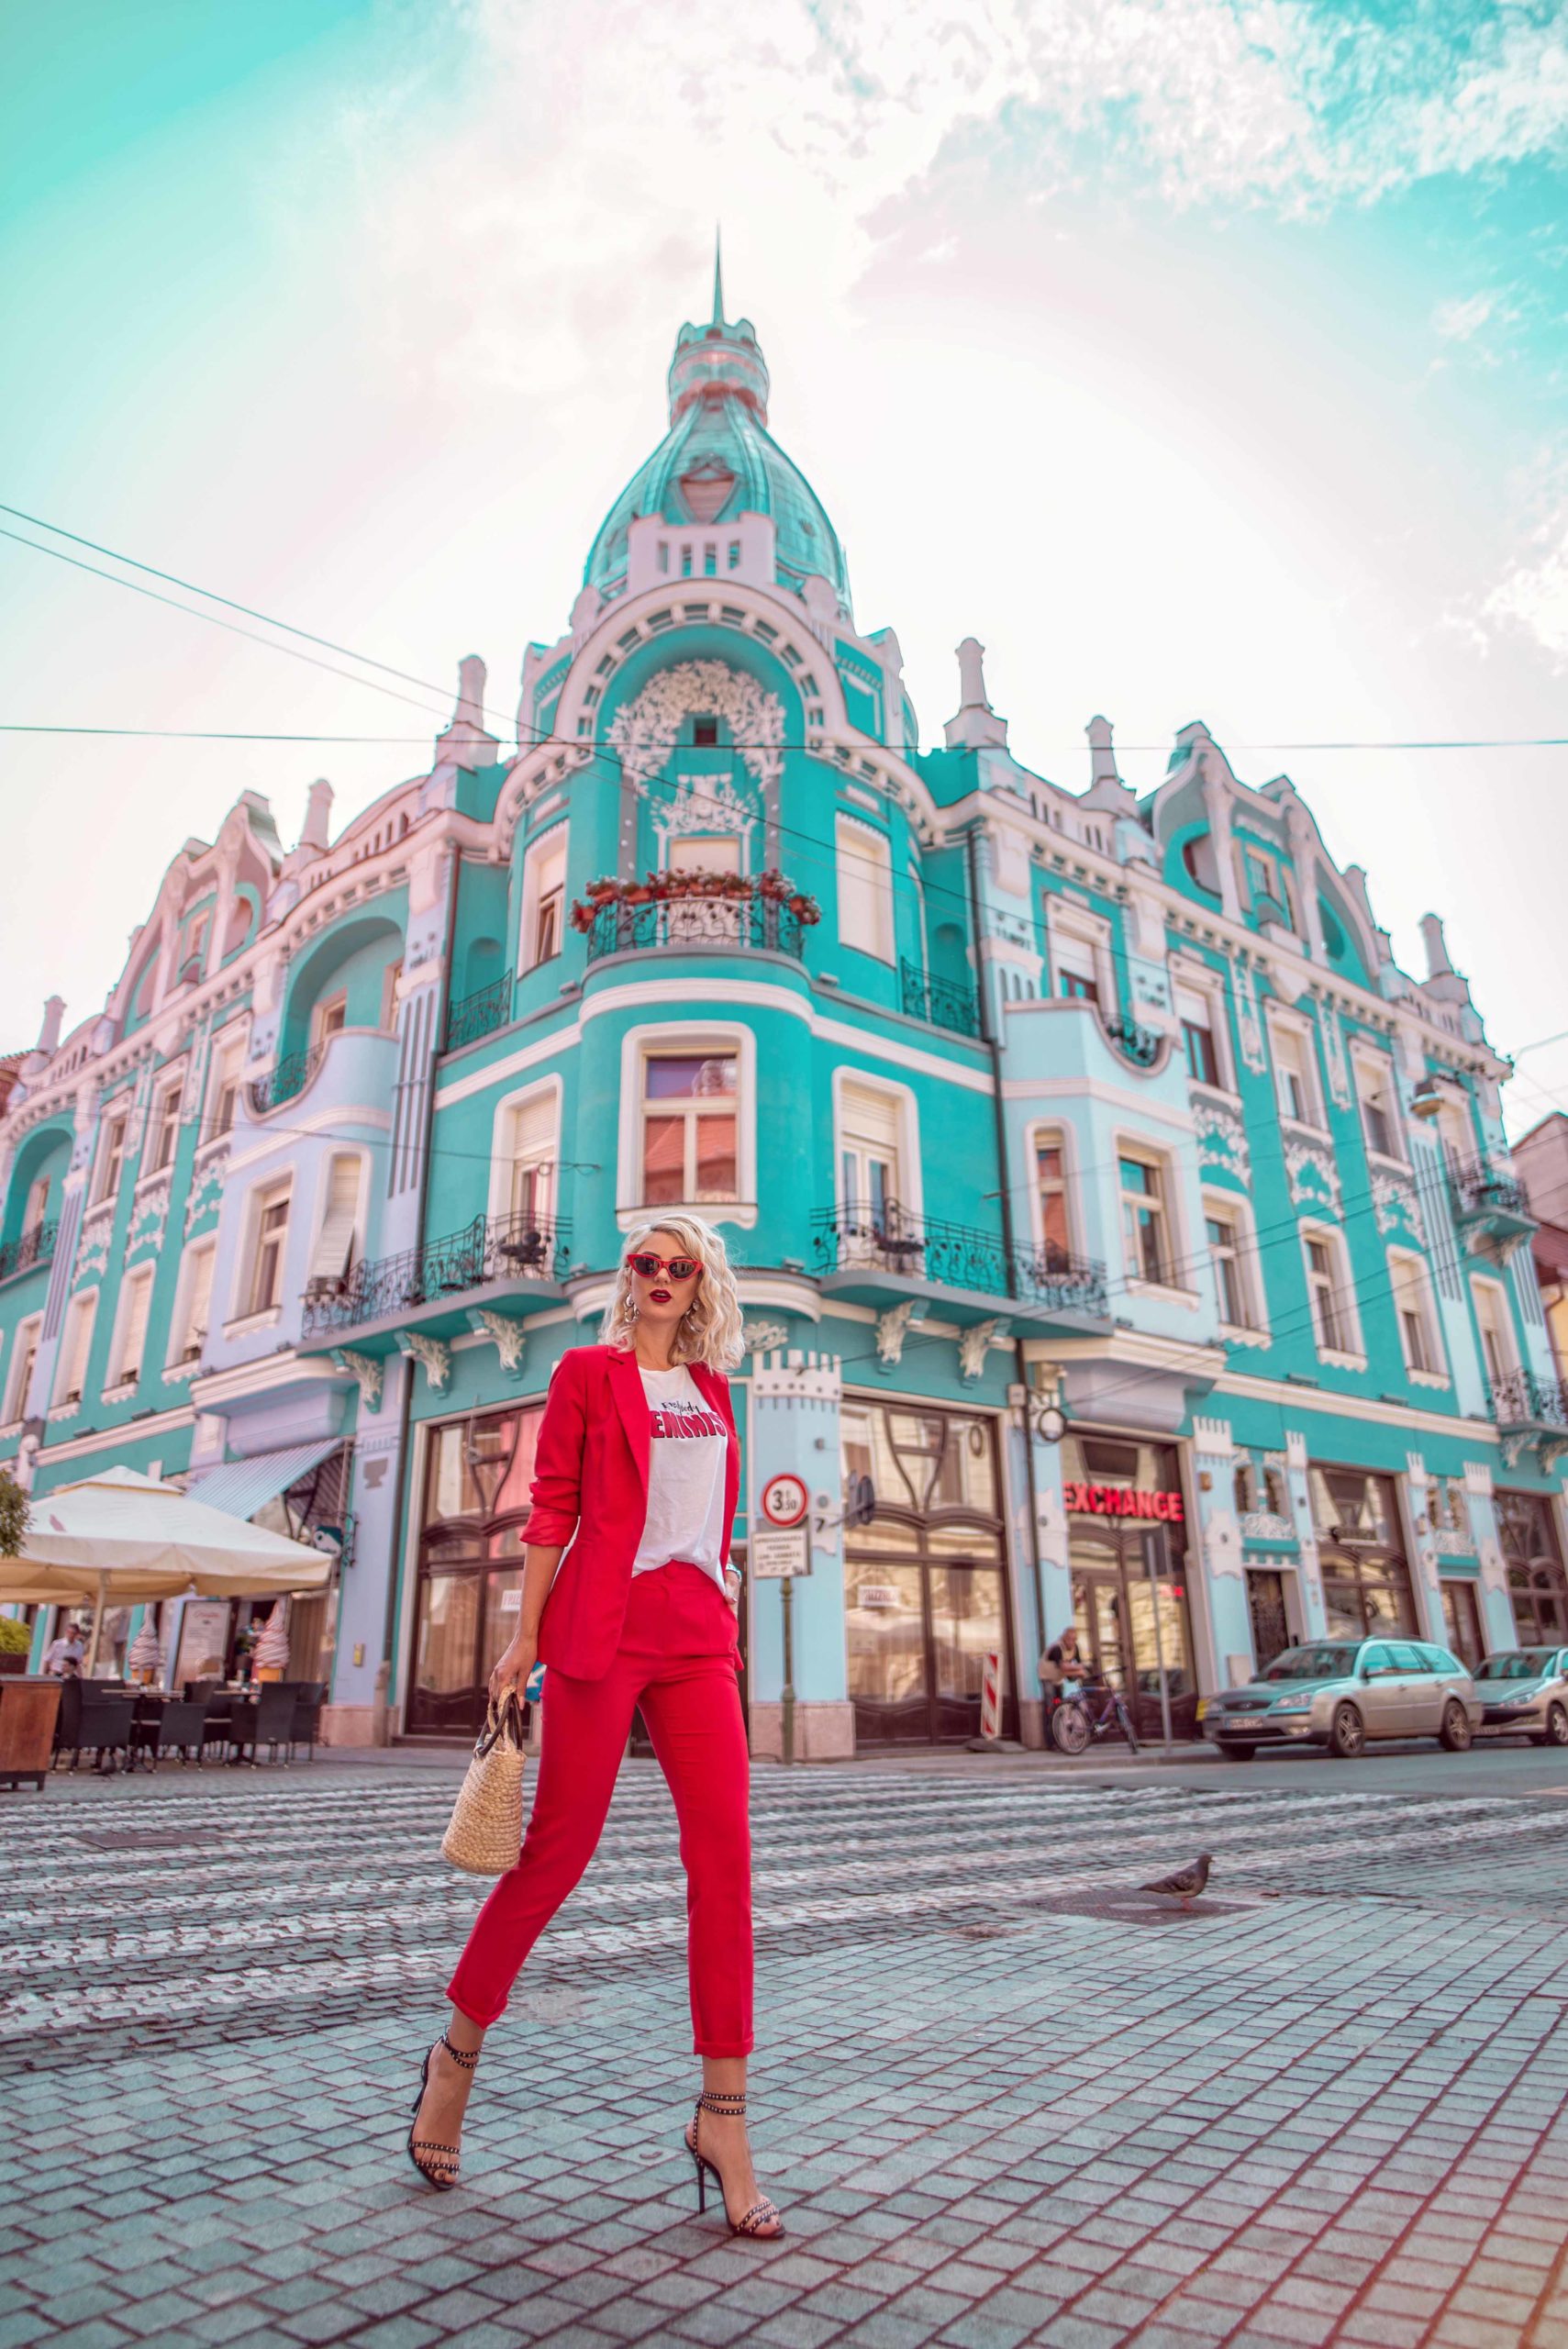 Instagrammeri din Oradea – Iulia Andrei